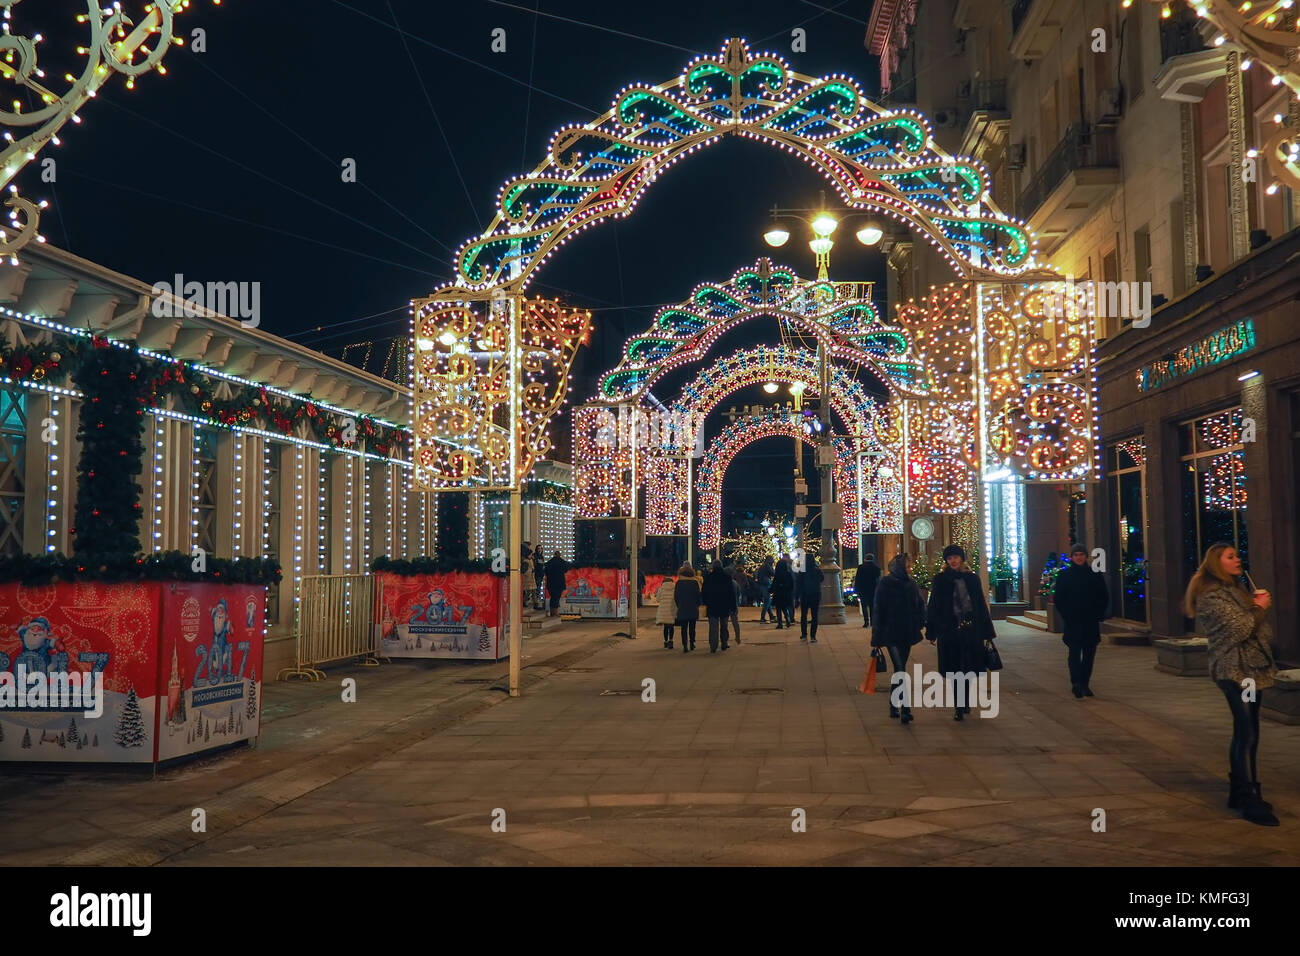 Moscou, Russie - 29 décembre 2016 : nouvelle année et les décorations de Noël et les lumières dans les rues de Moscou. Banque D'Images